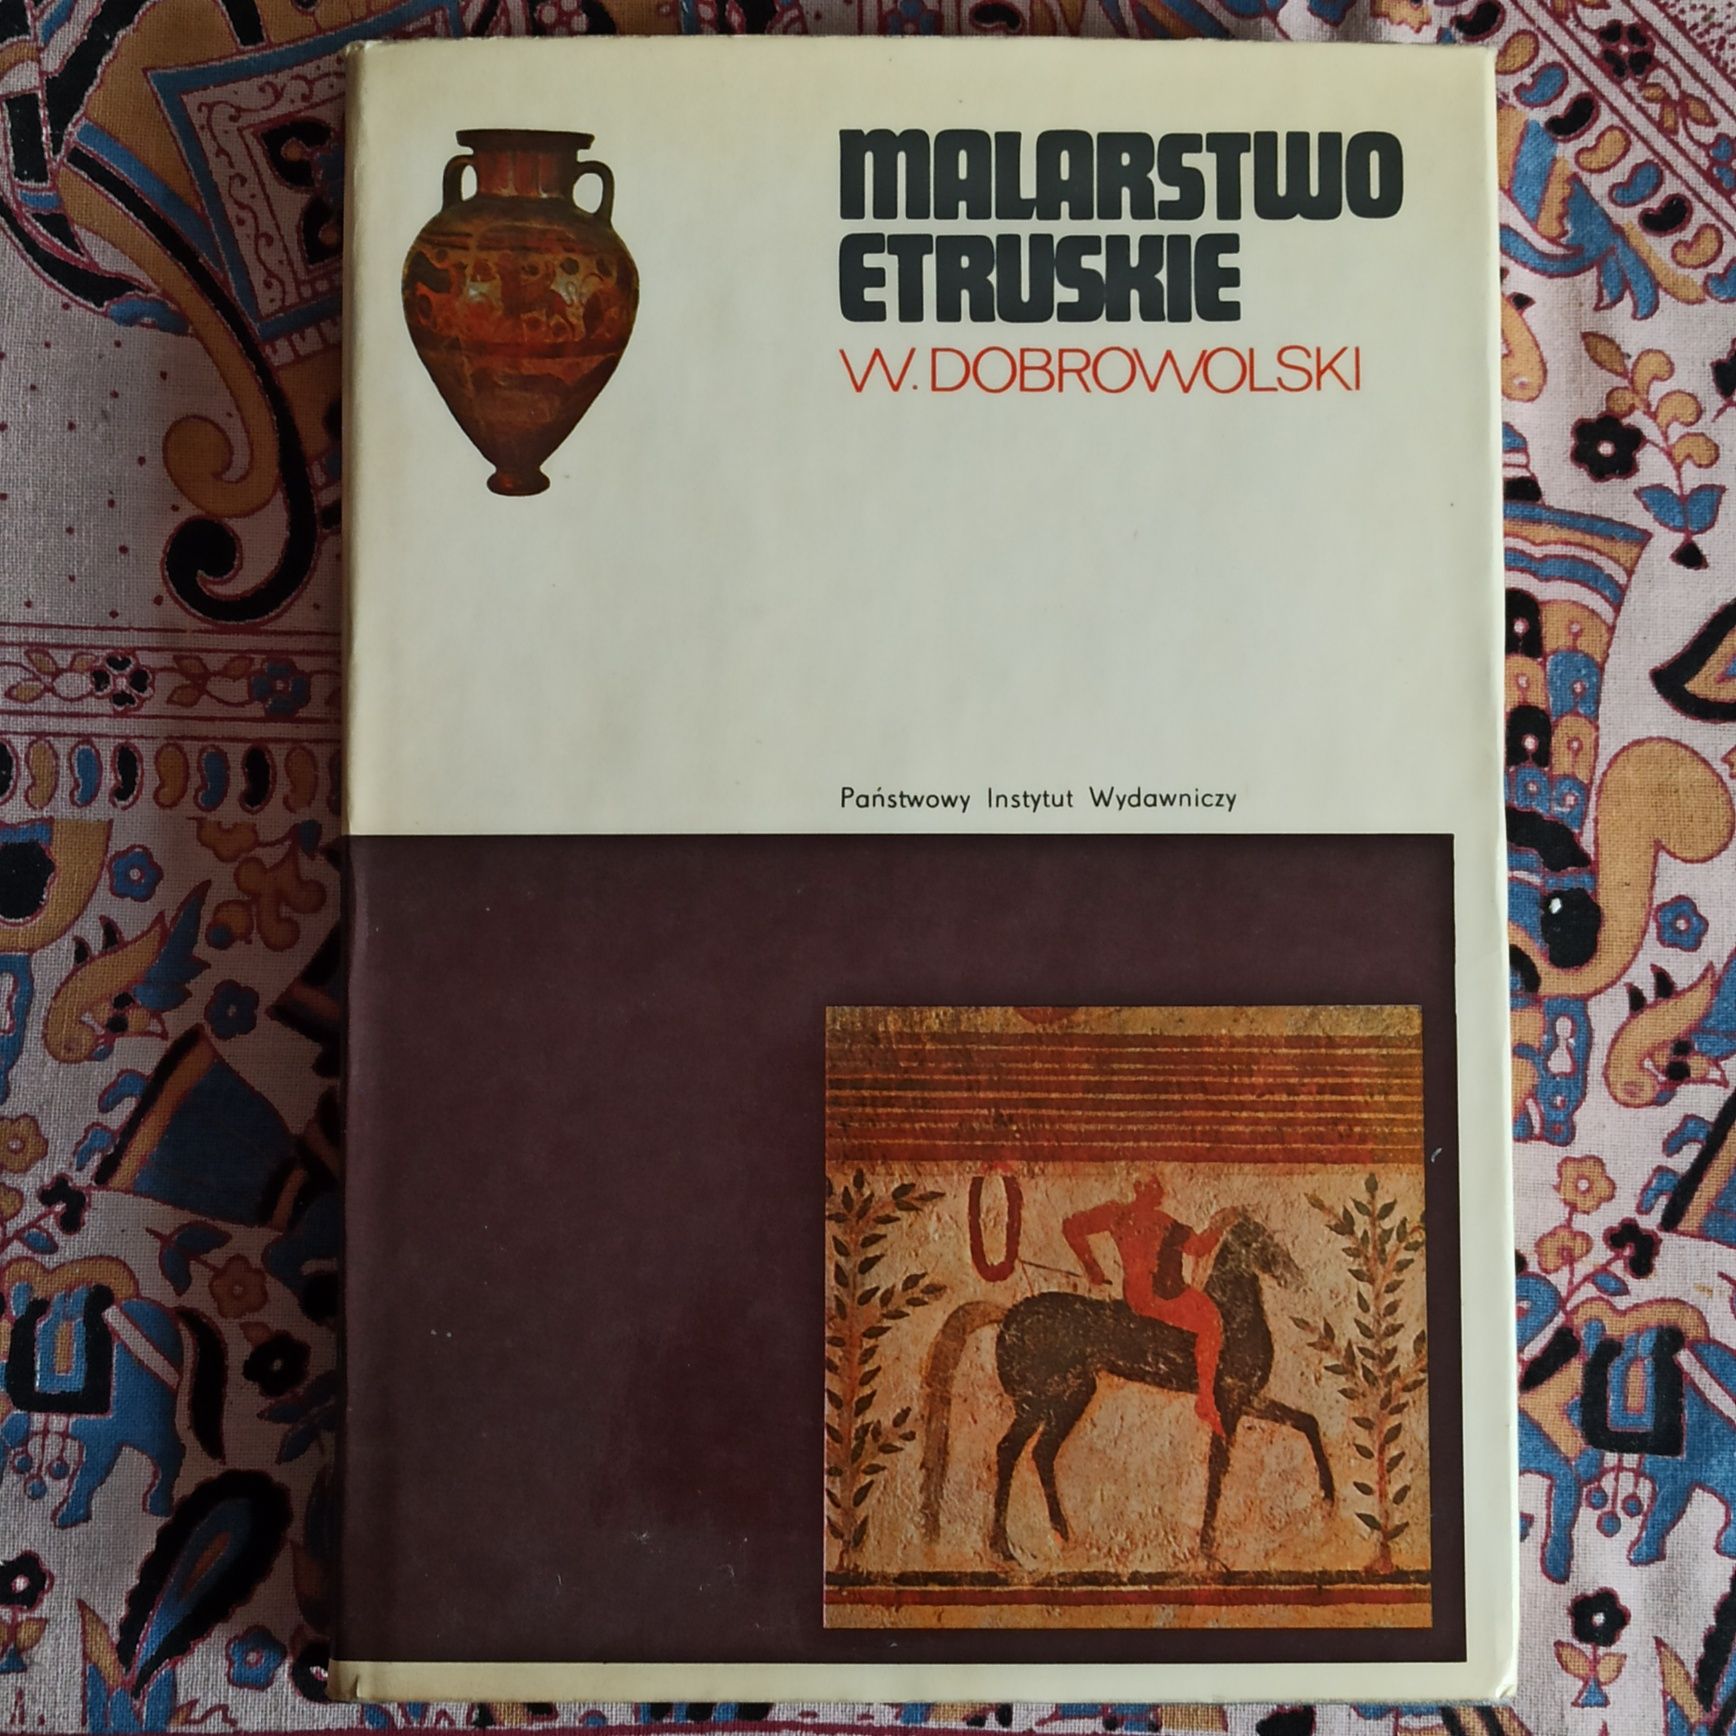 Malarstwo Etruskie - W. Dobrowolski.